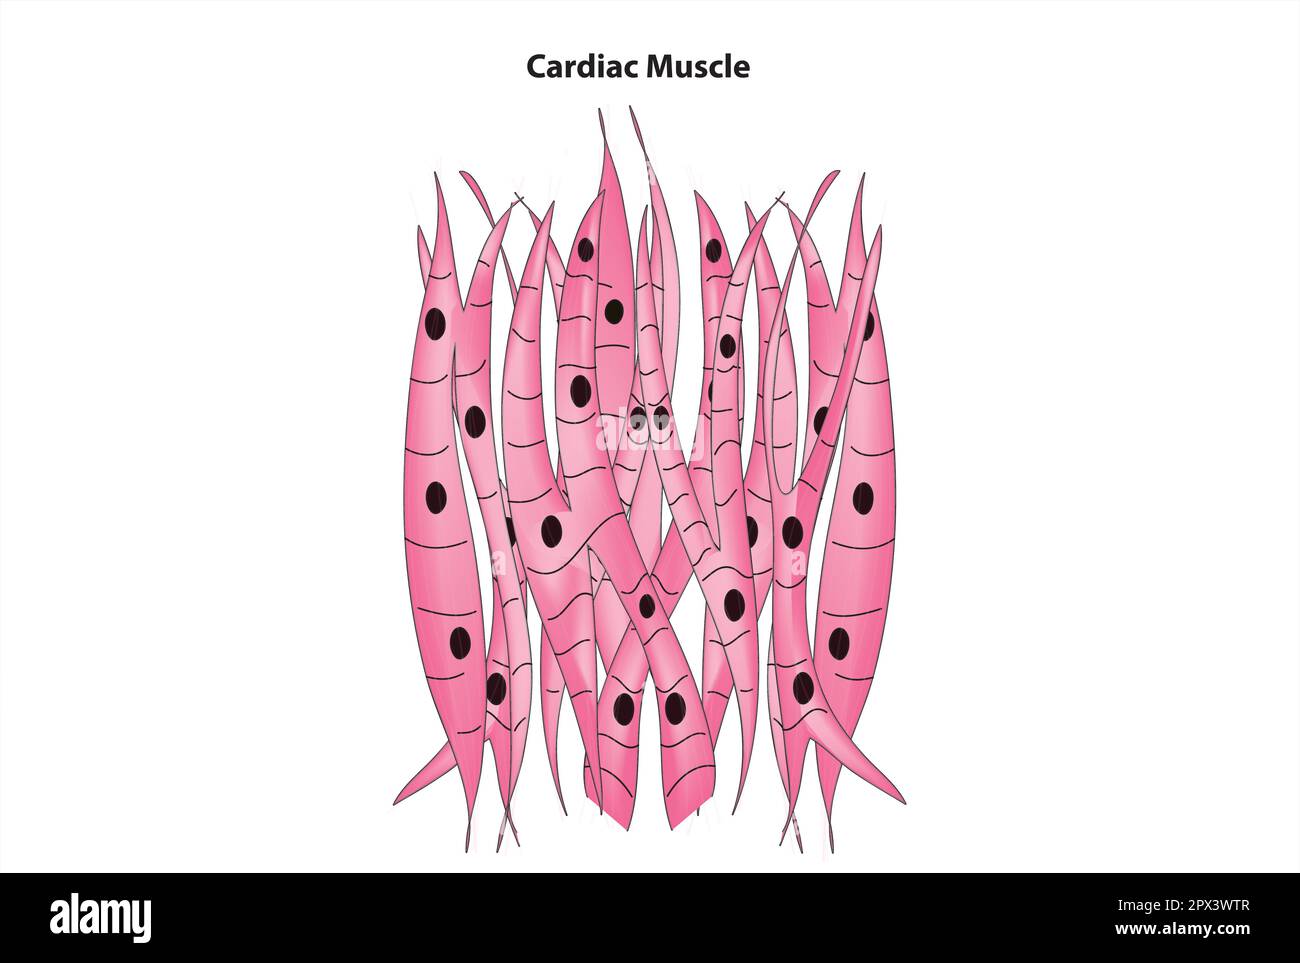 Cardiac muscle Stock Vector